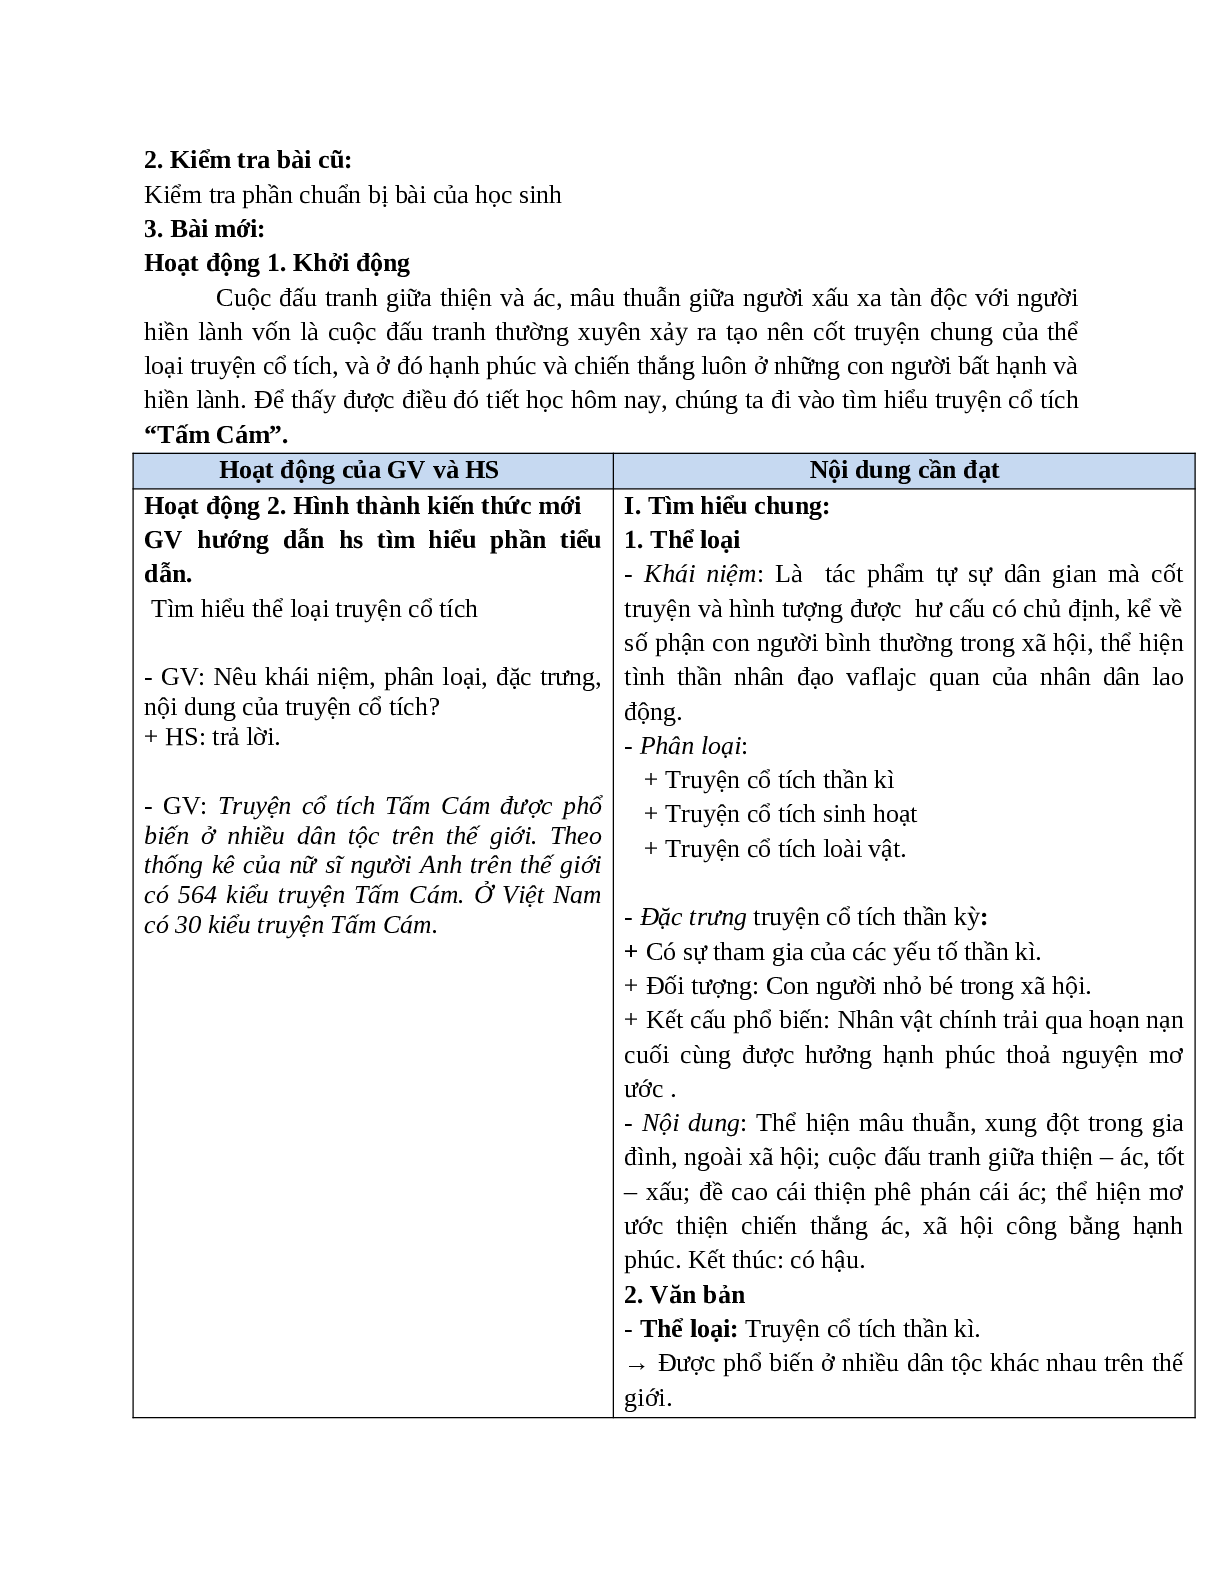 Giáo án Ngữ văn 10 Tập 1 Bài Tấm Cám (tiết 1) mới nhất (trang 2)